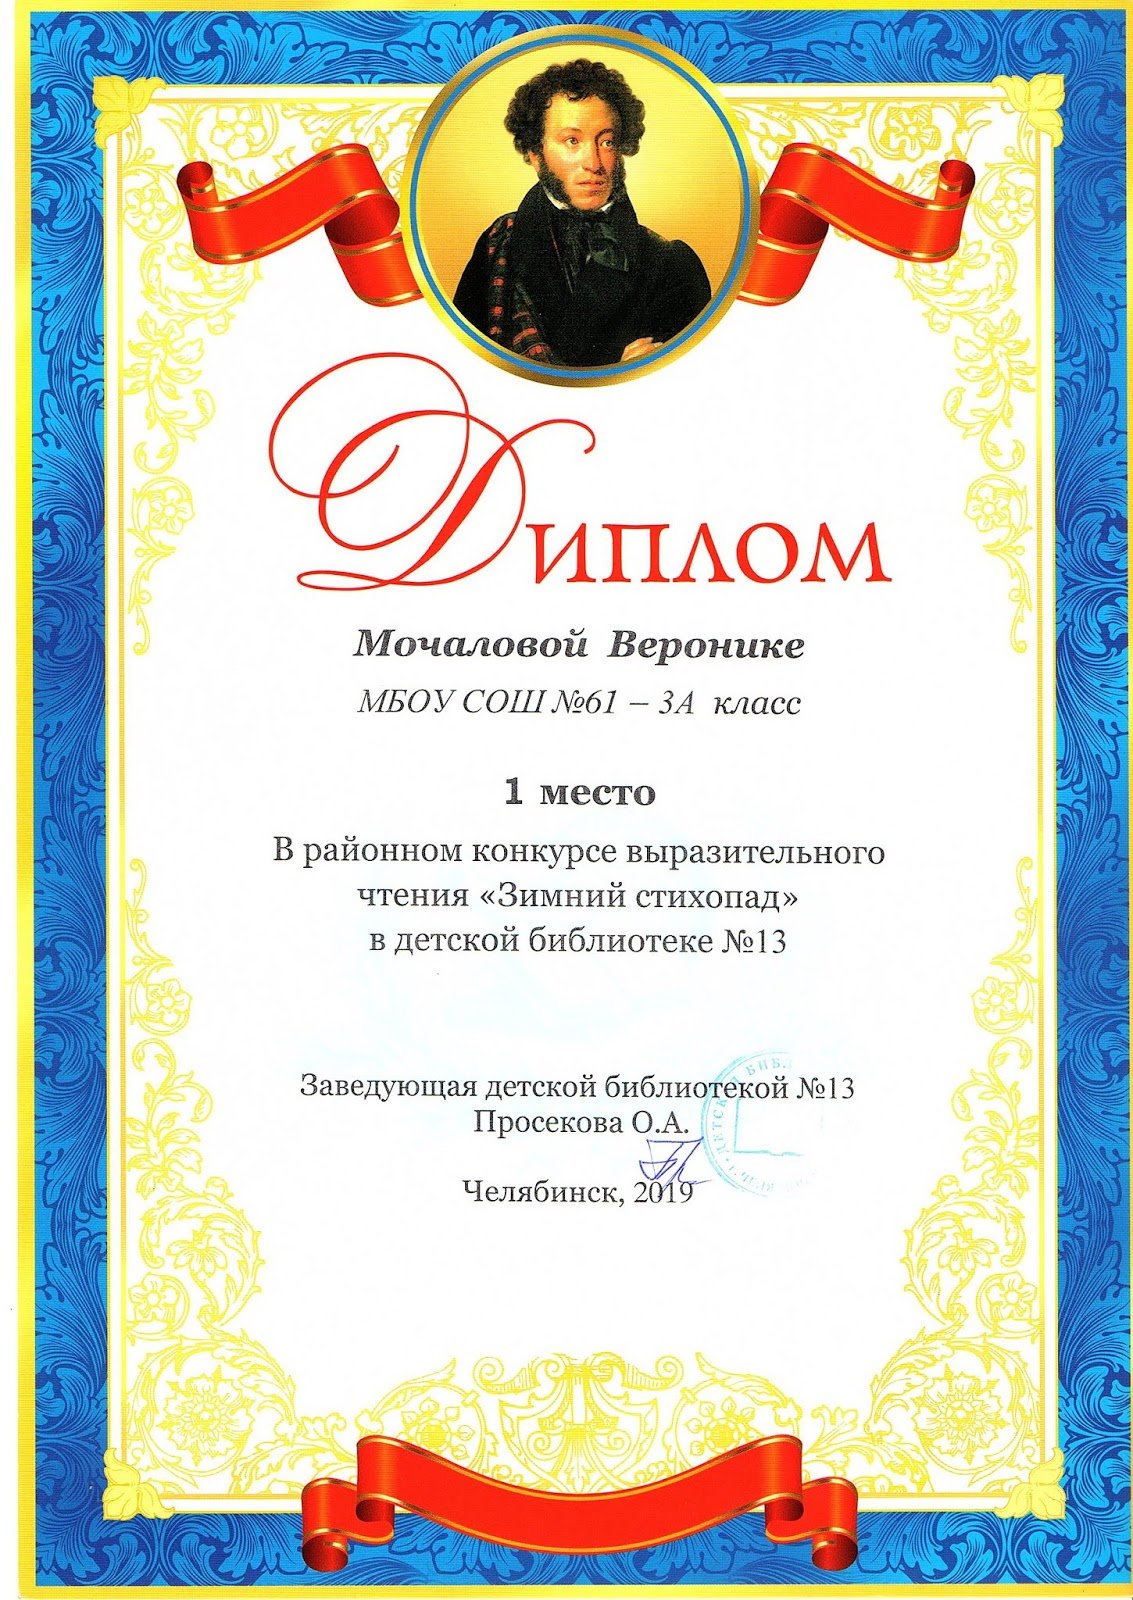 Образец диплома, грамоты для участника конкурса чтецов